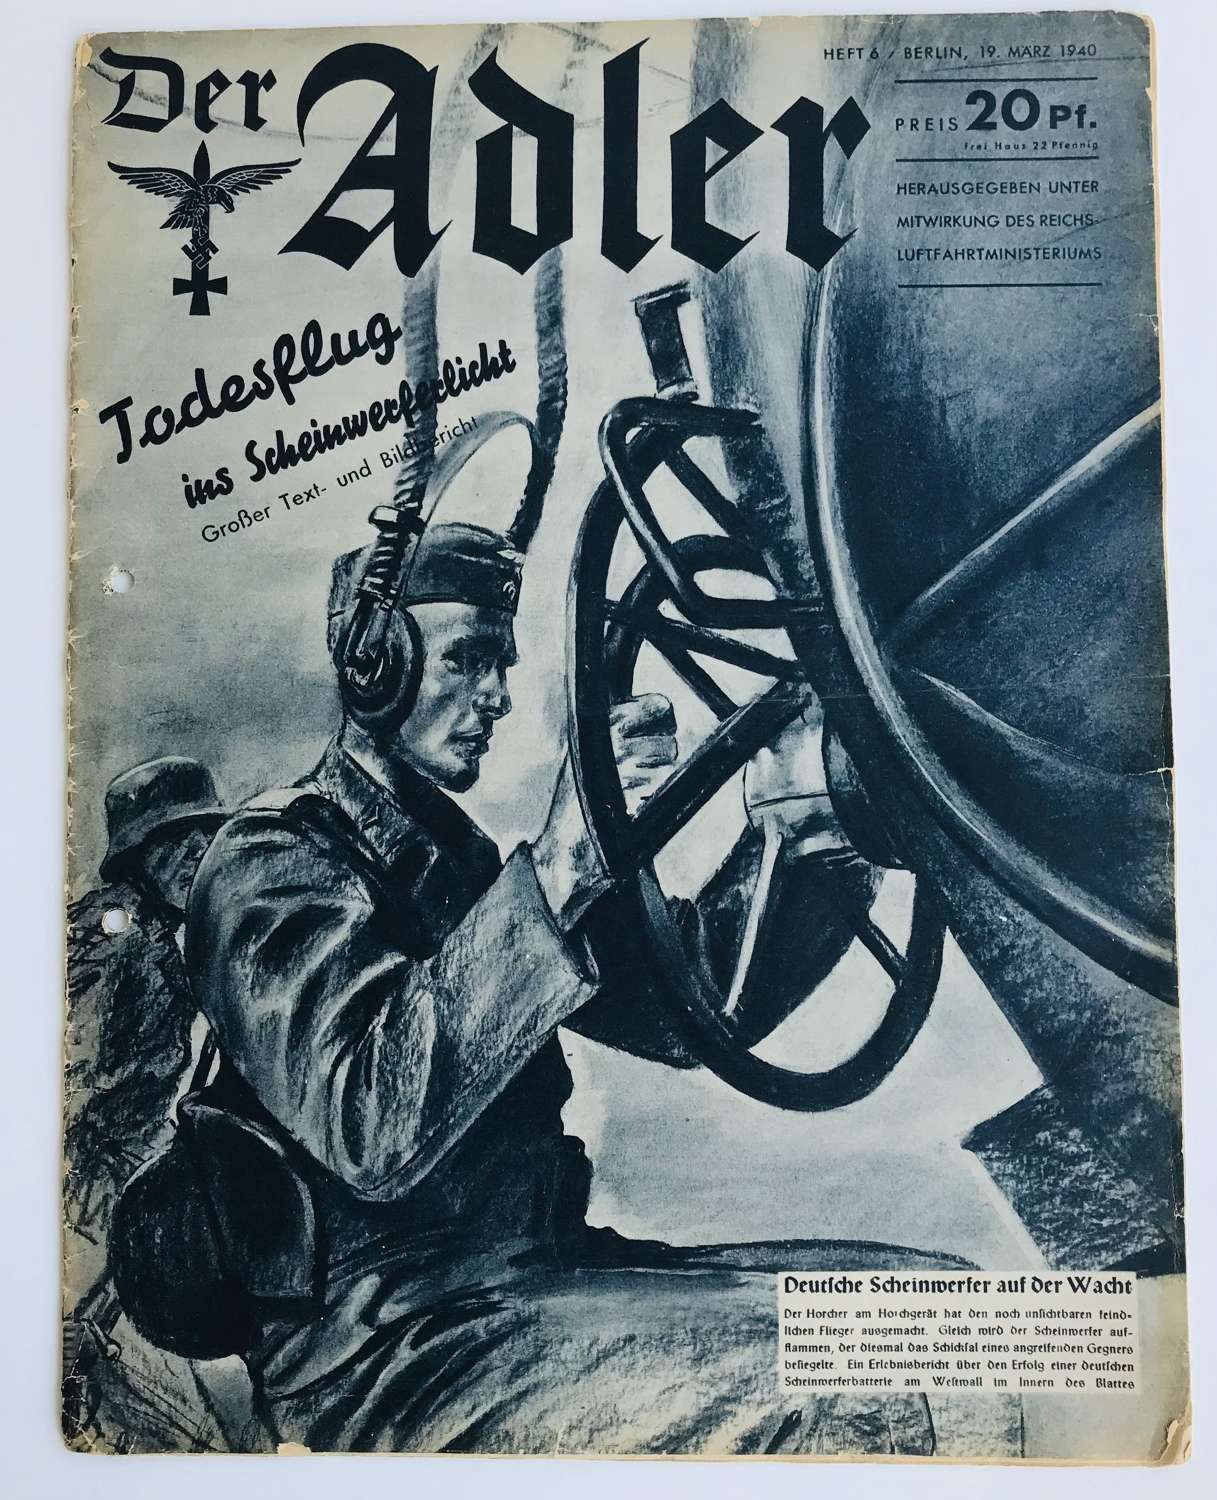 Alder Luftwaffe magazine dated March 1940